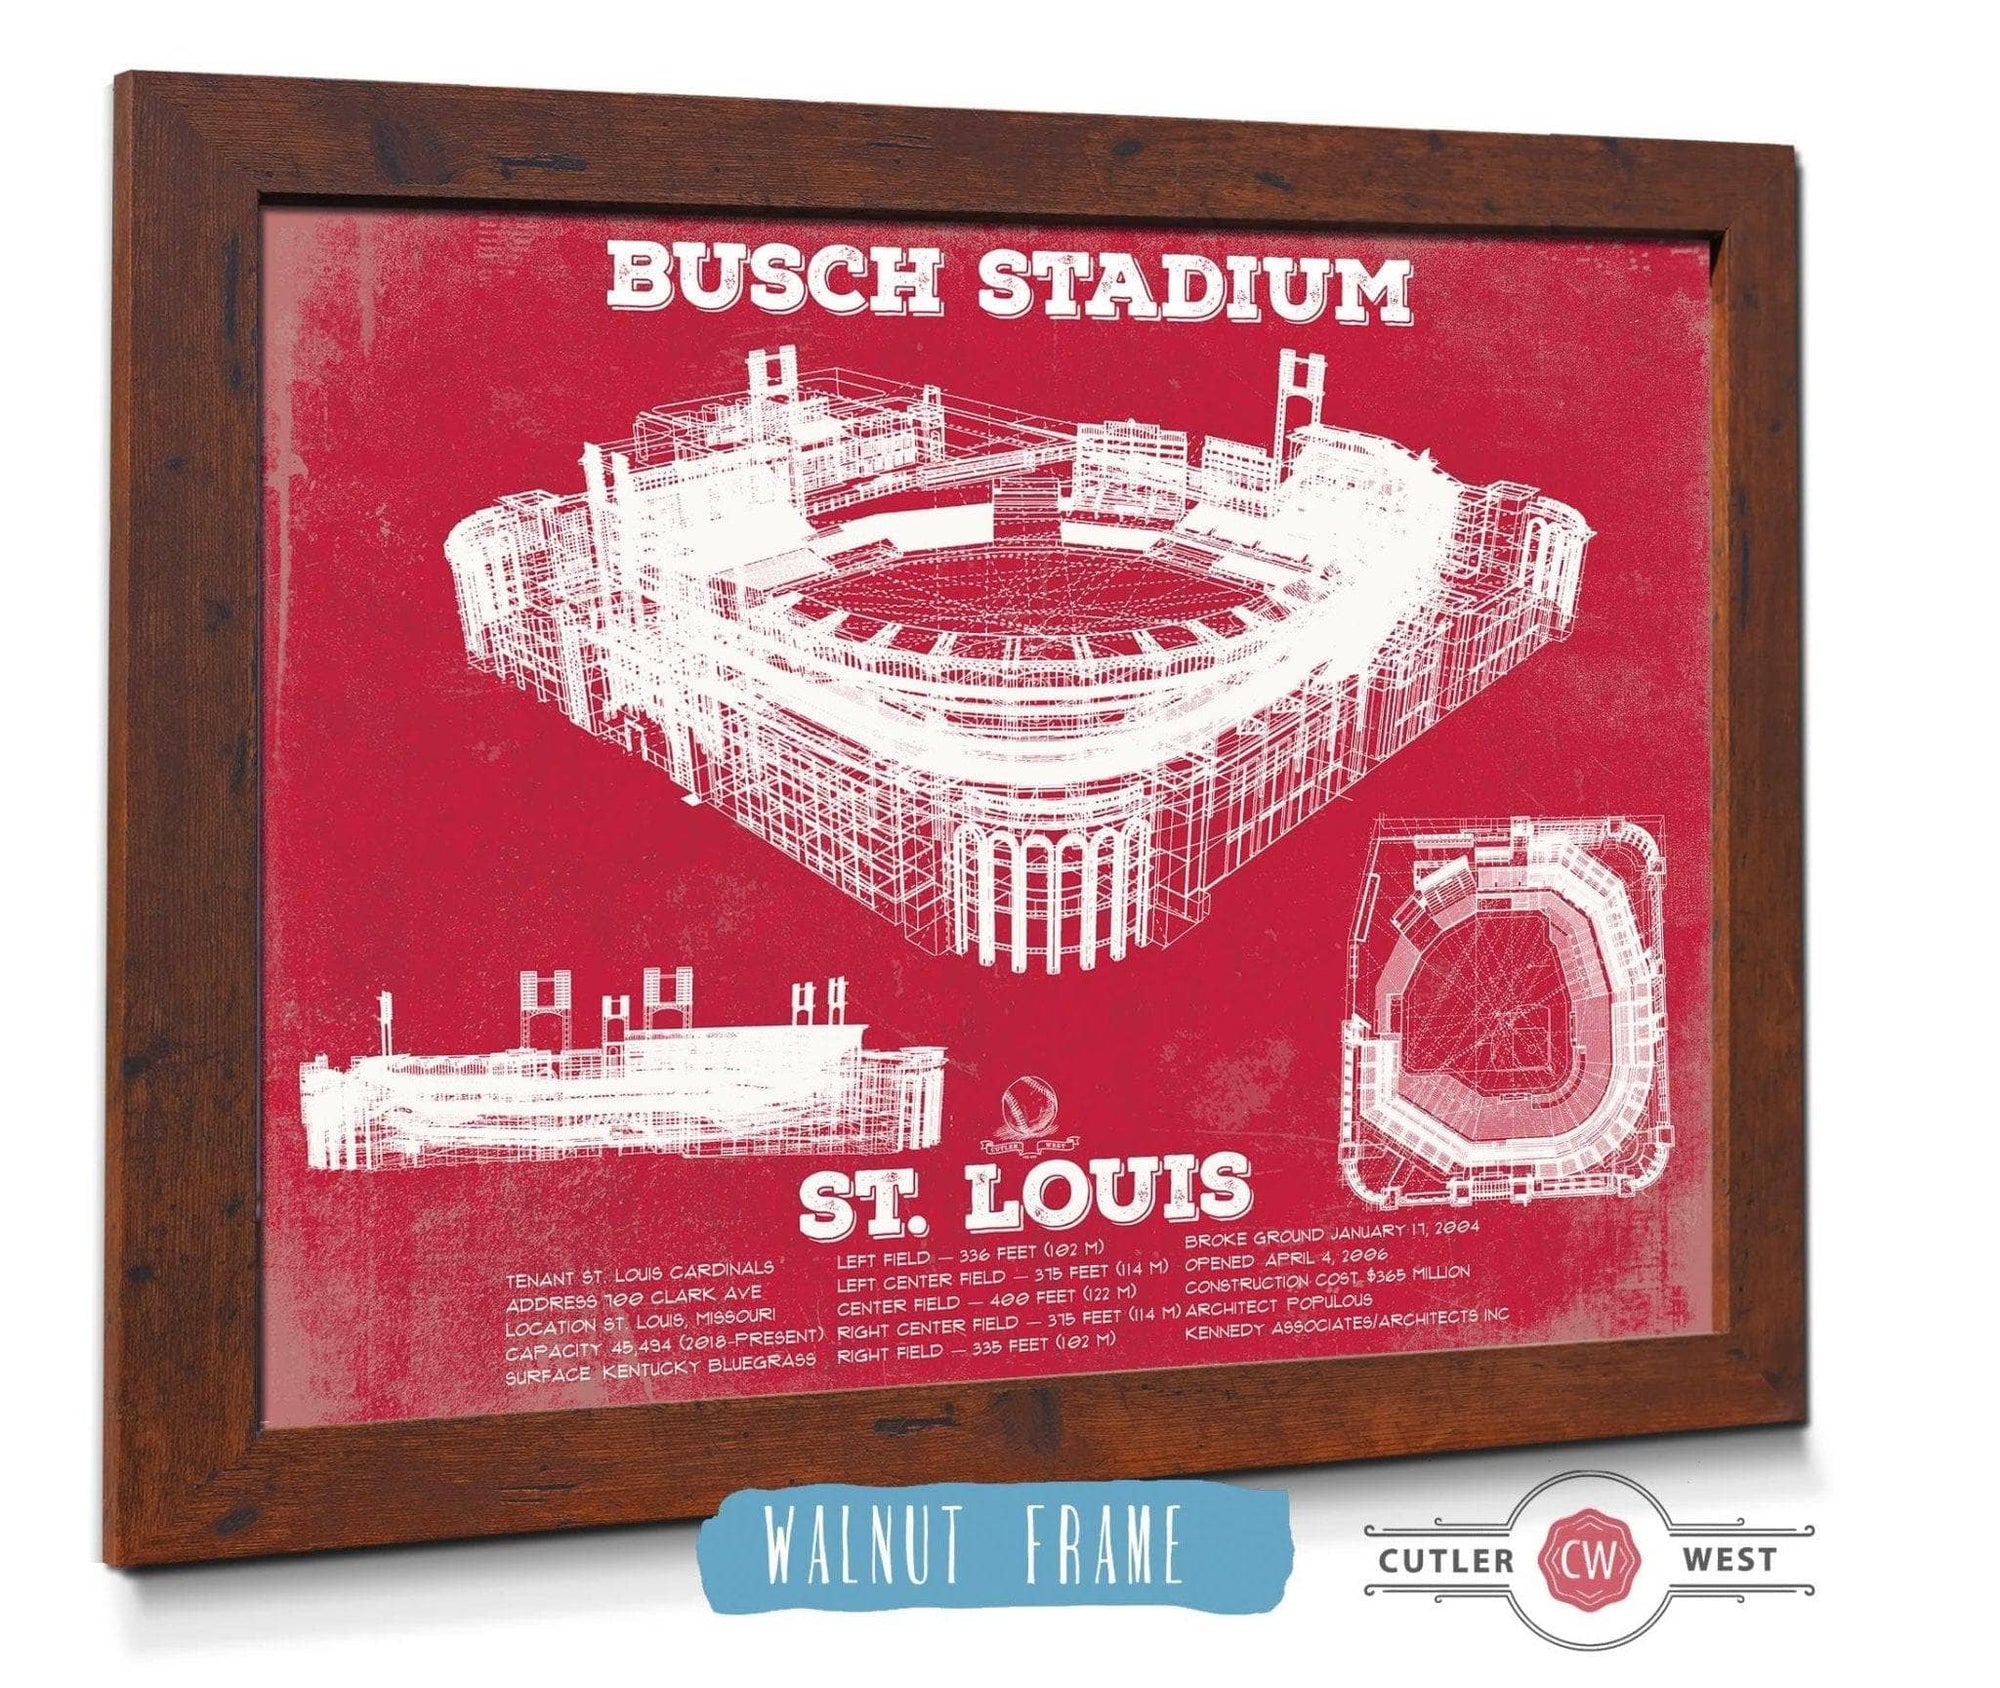 Cutler West Baseball Collection 14" x 11" / Walnut Frame St. Louis Cardinals - Busch Stadium Vintage Baseball Print 729259760